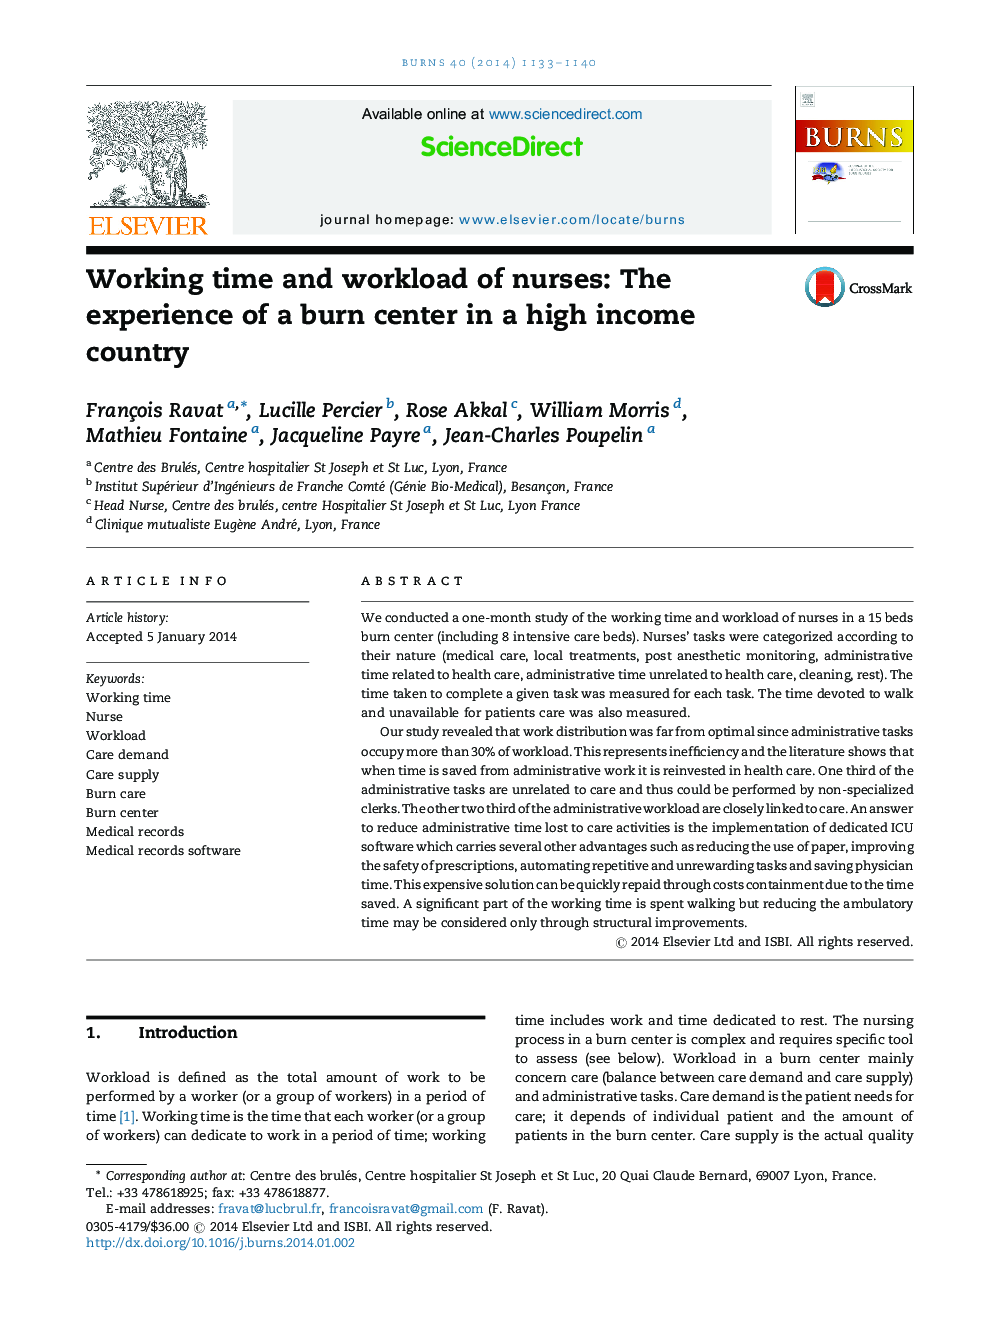 زمان کار و حجم کاری پرستاران: تجربه مرکز سوختگی در یک کشور با درآمد بالا 